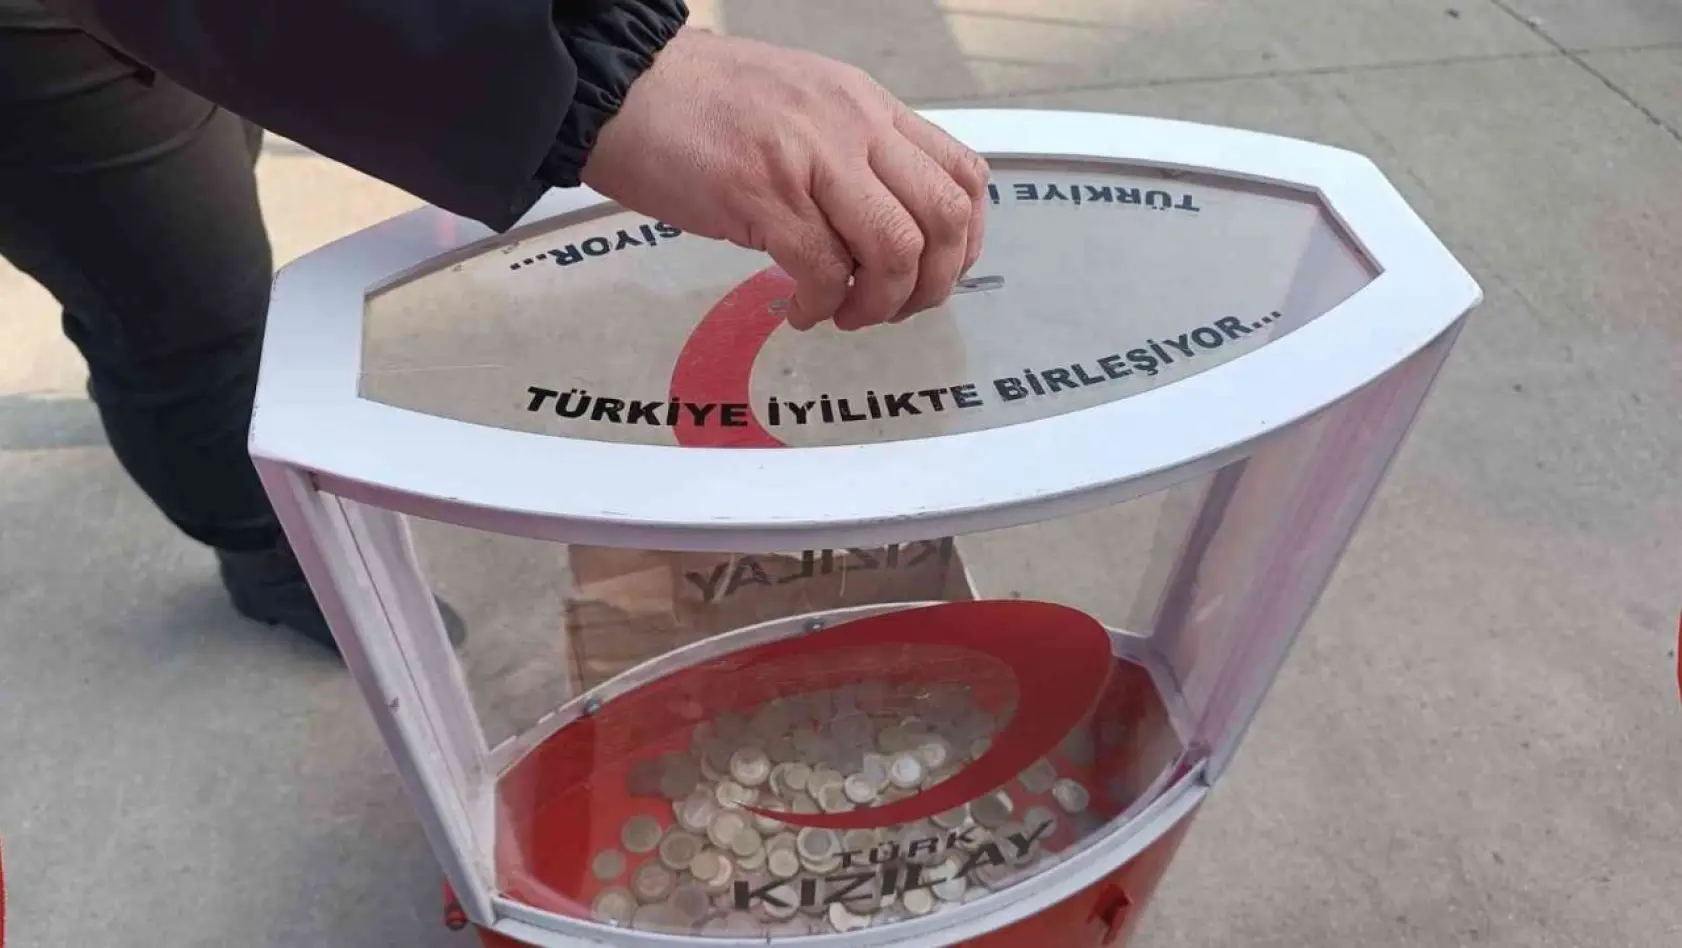 Basketbol maçına alınmayan bozuk paralar Kızılay'a bağışlandı